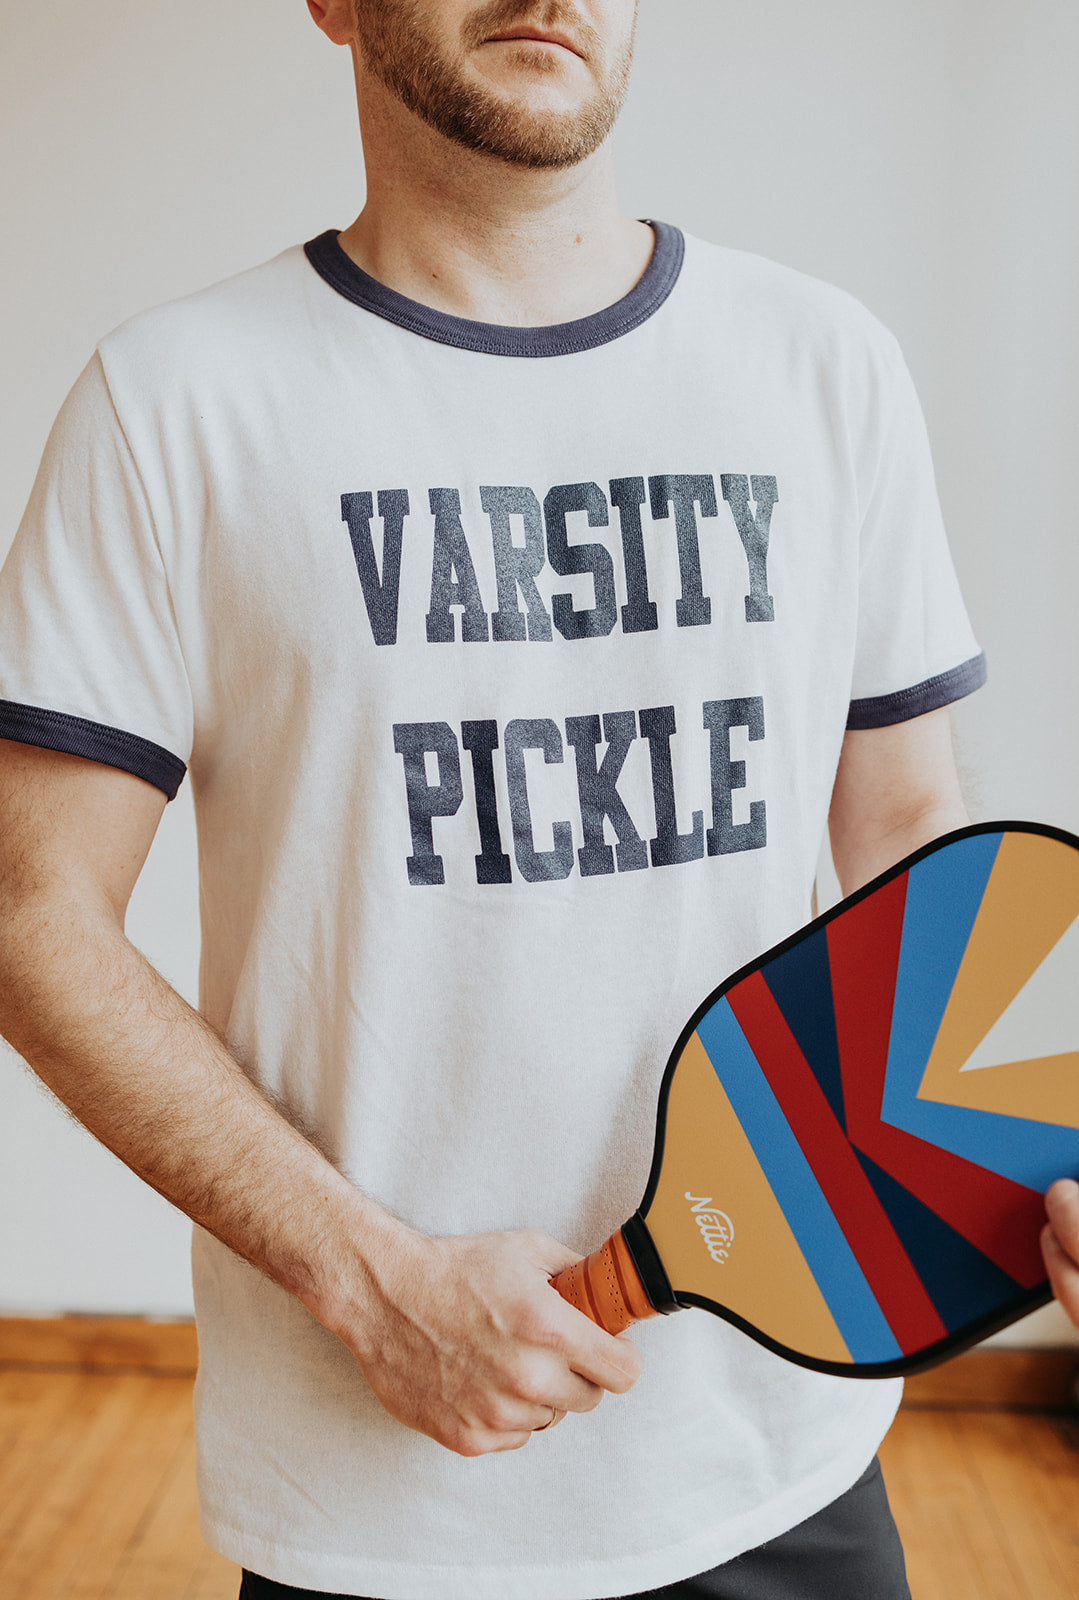 Collegiate Ringer Pickleball T-Shirt (Unisex)